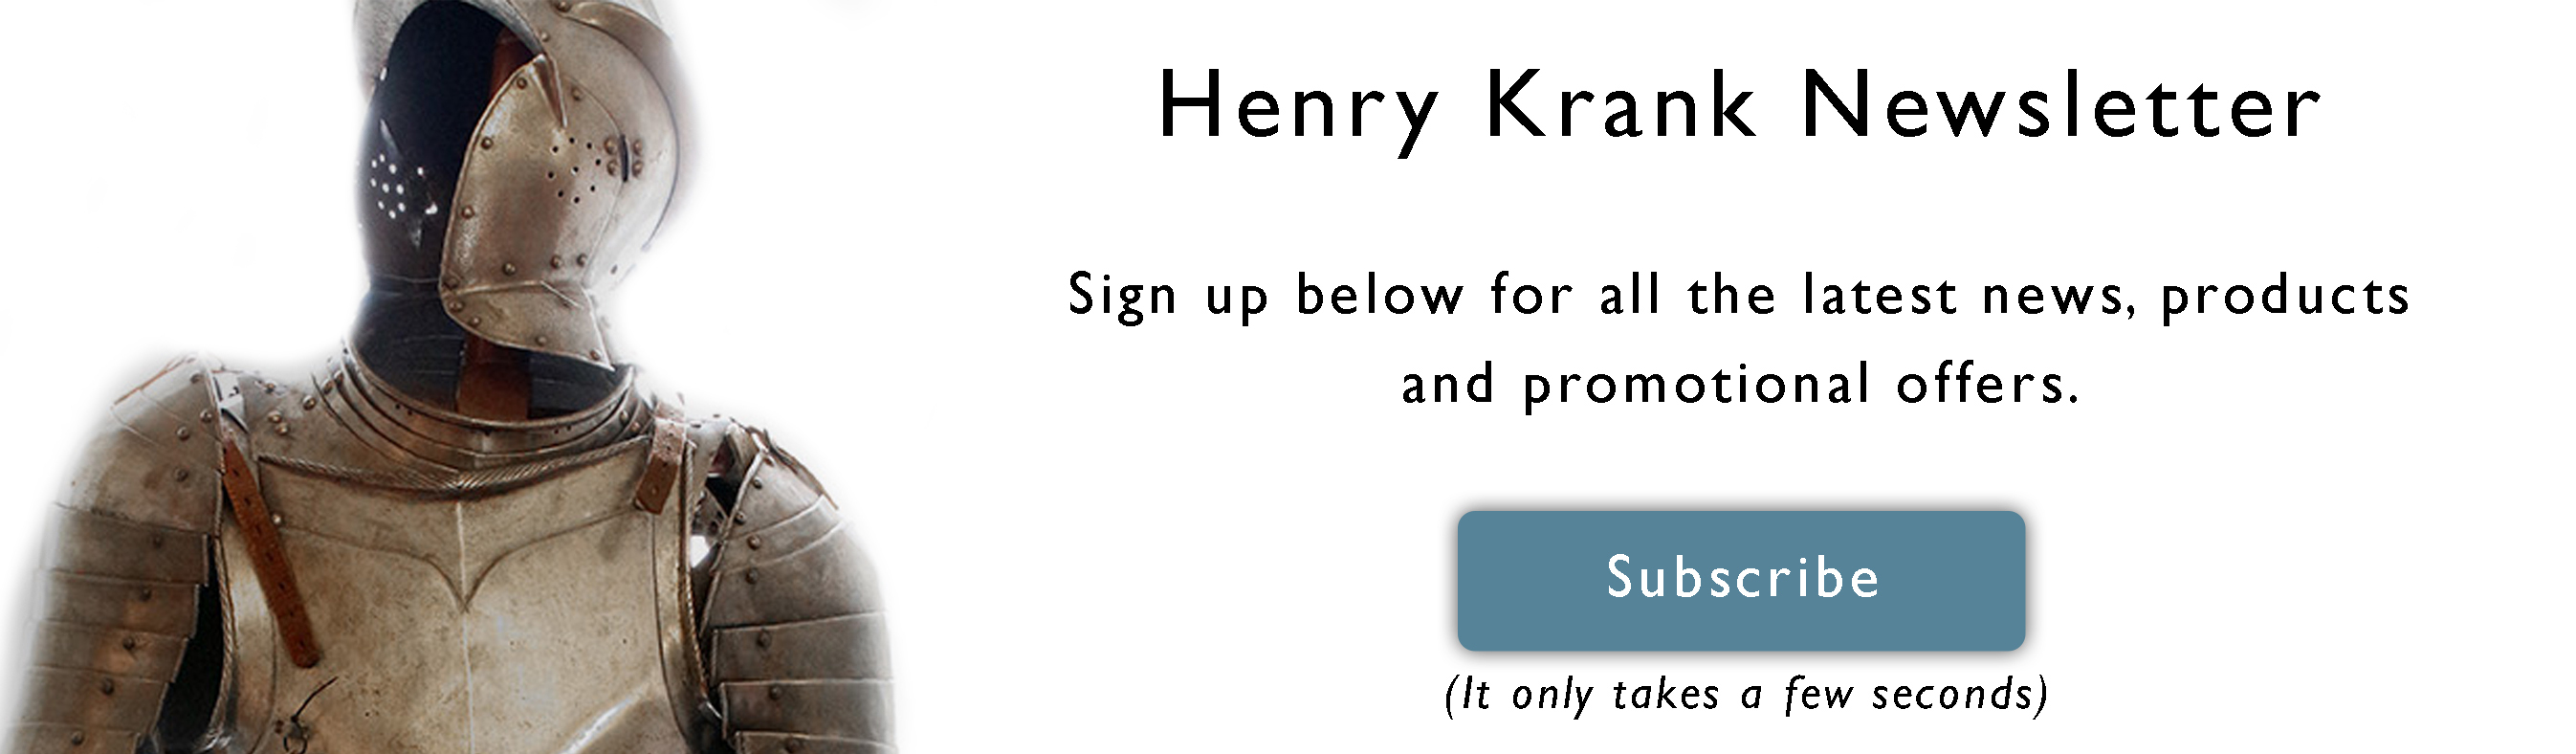 Henry Krank Newsletter Signup Banner